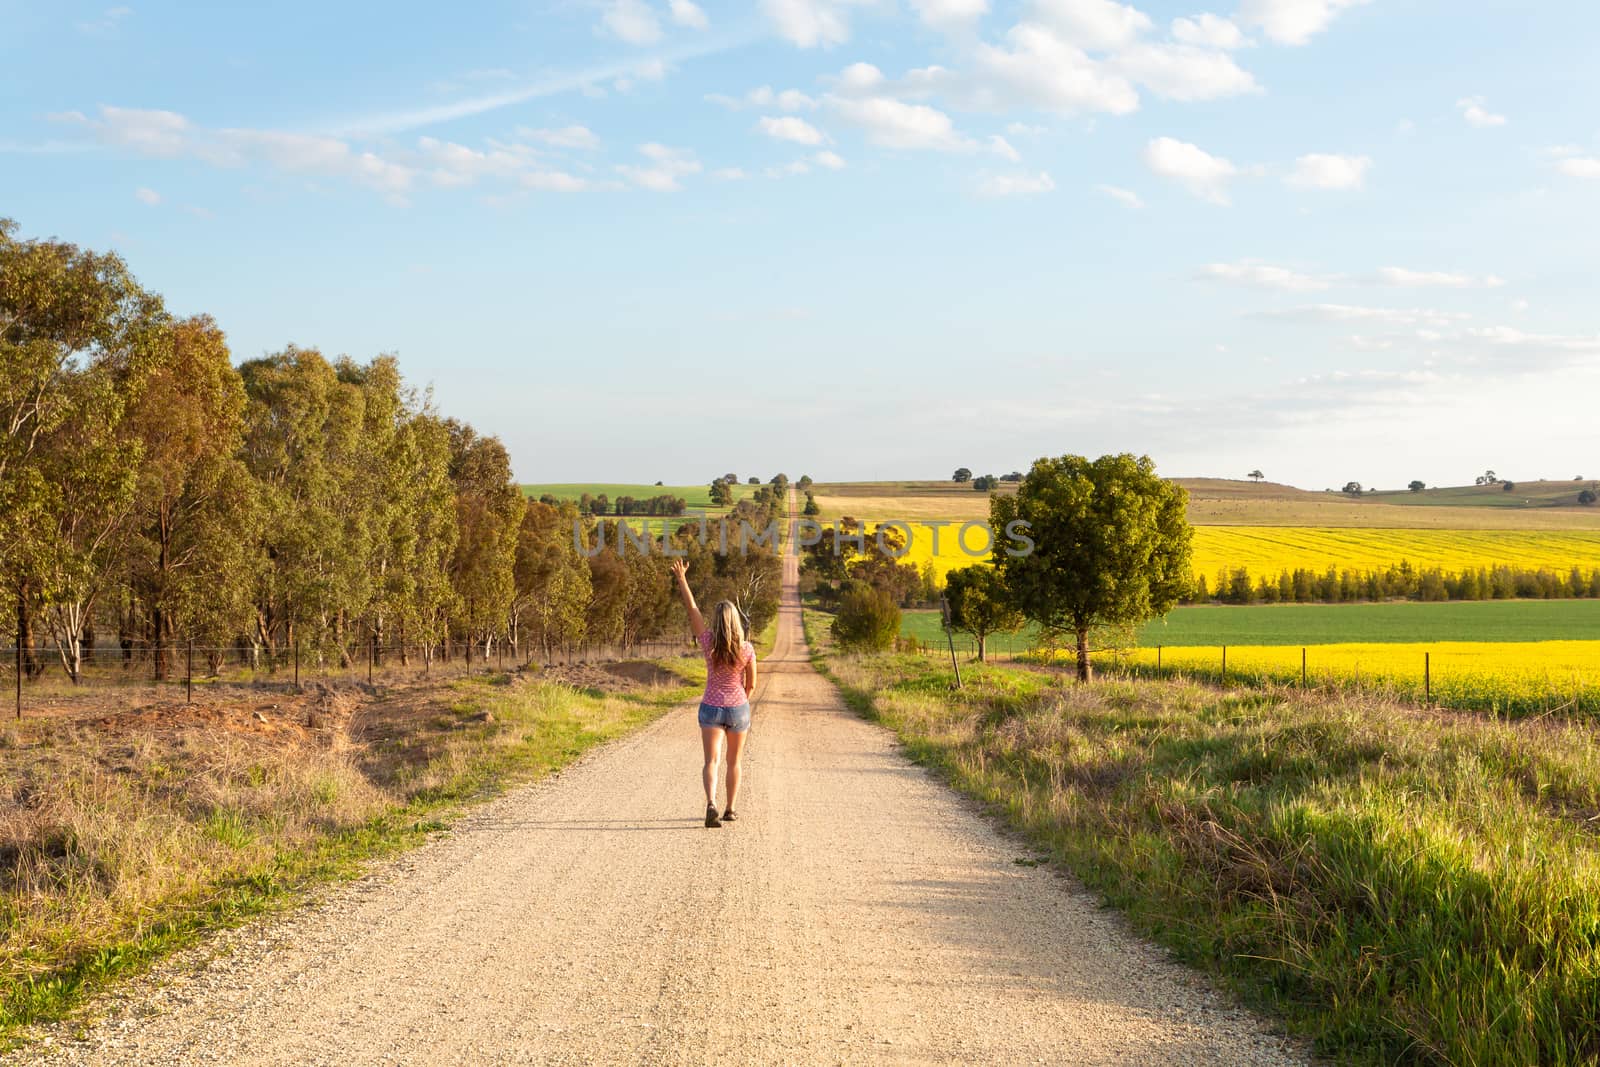 Woman walking along a dusty road among the rural fields by lovleah